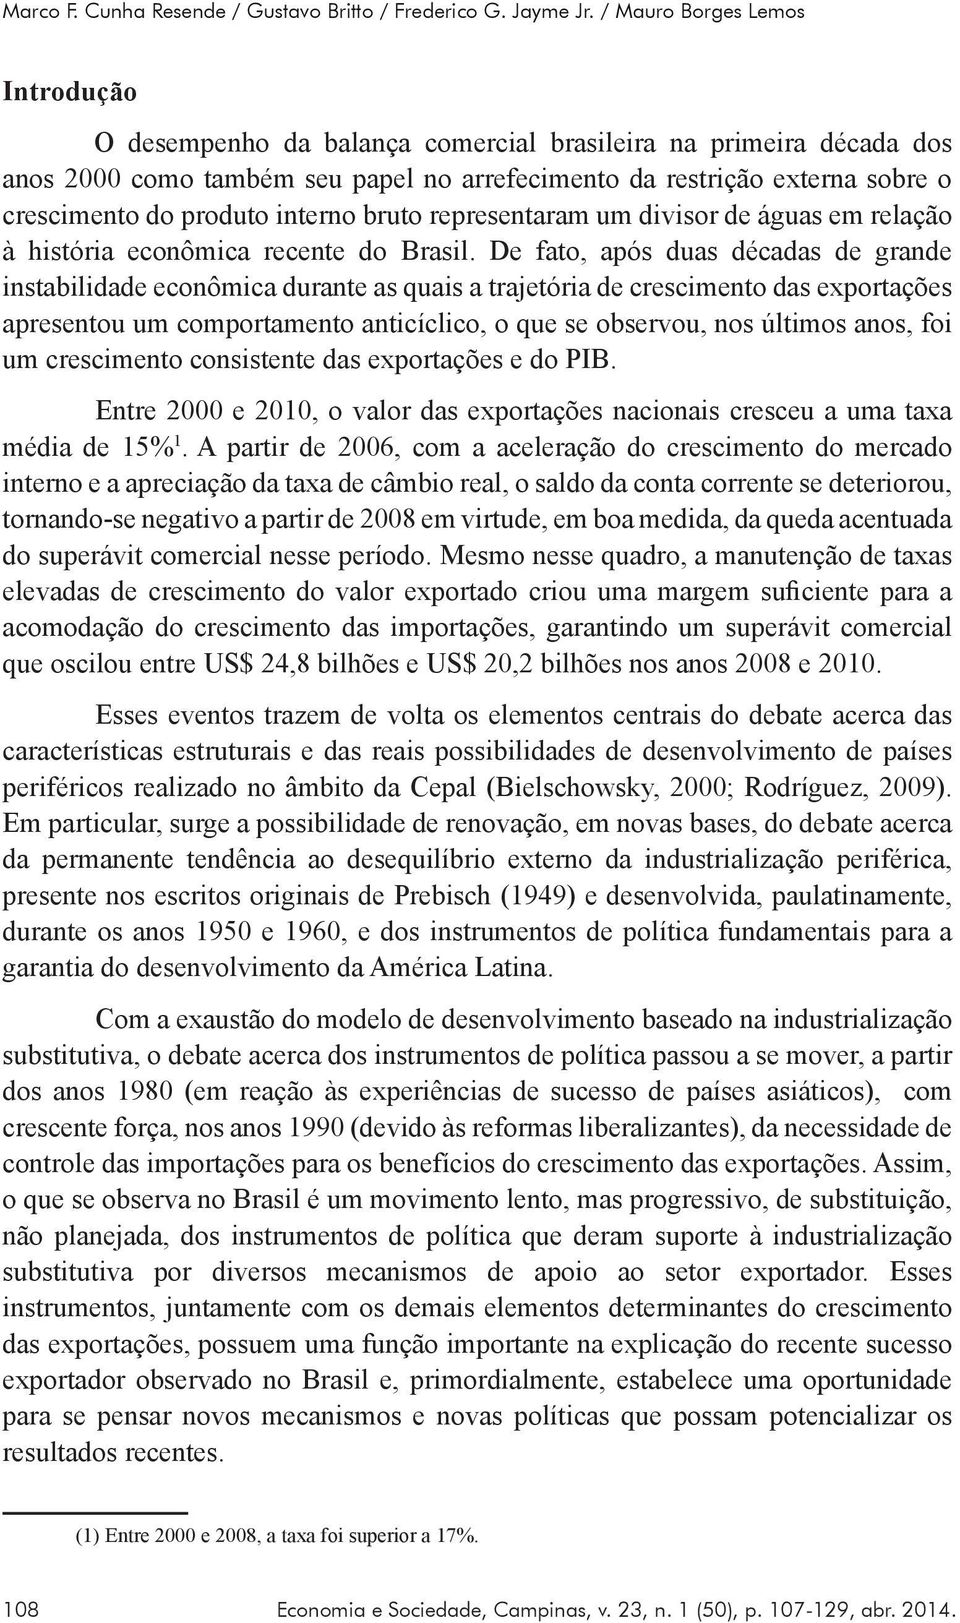 produto interno bruto representaram um divisor de águas em relação à história econômica recente do Brasil.